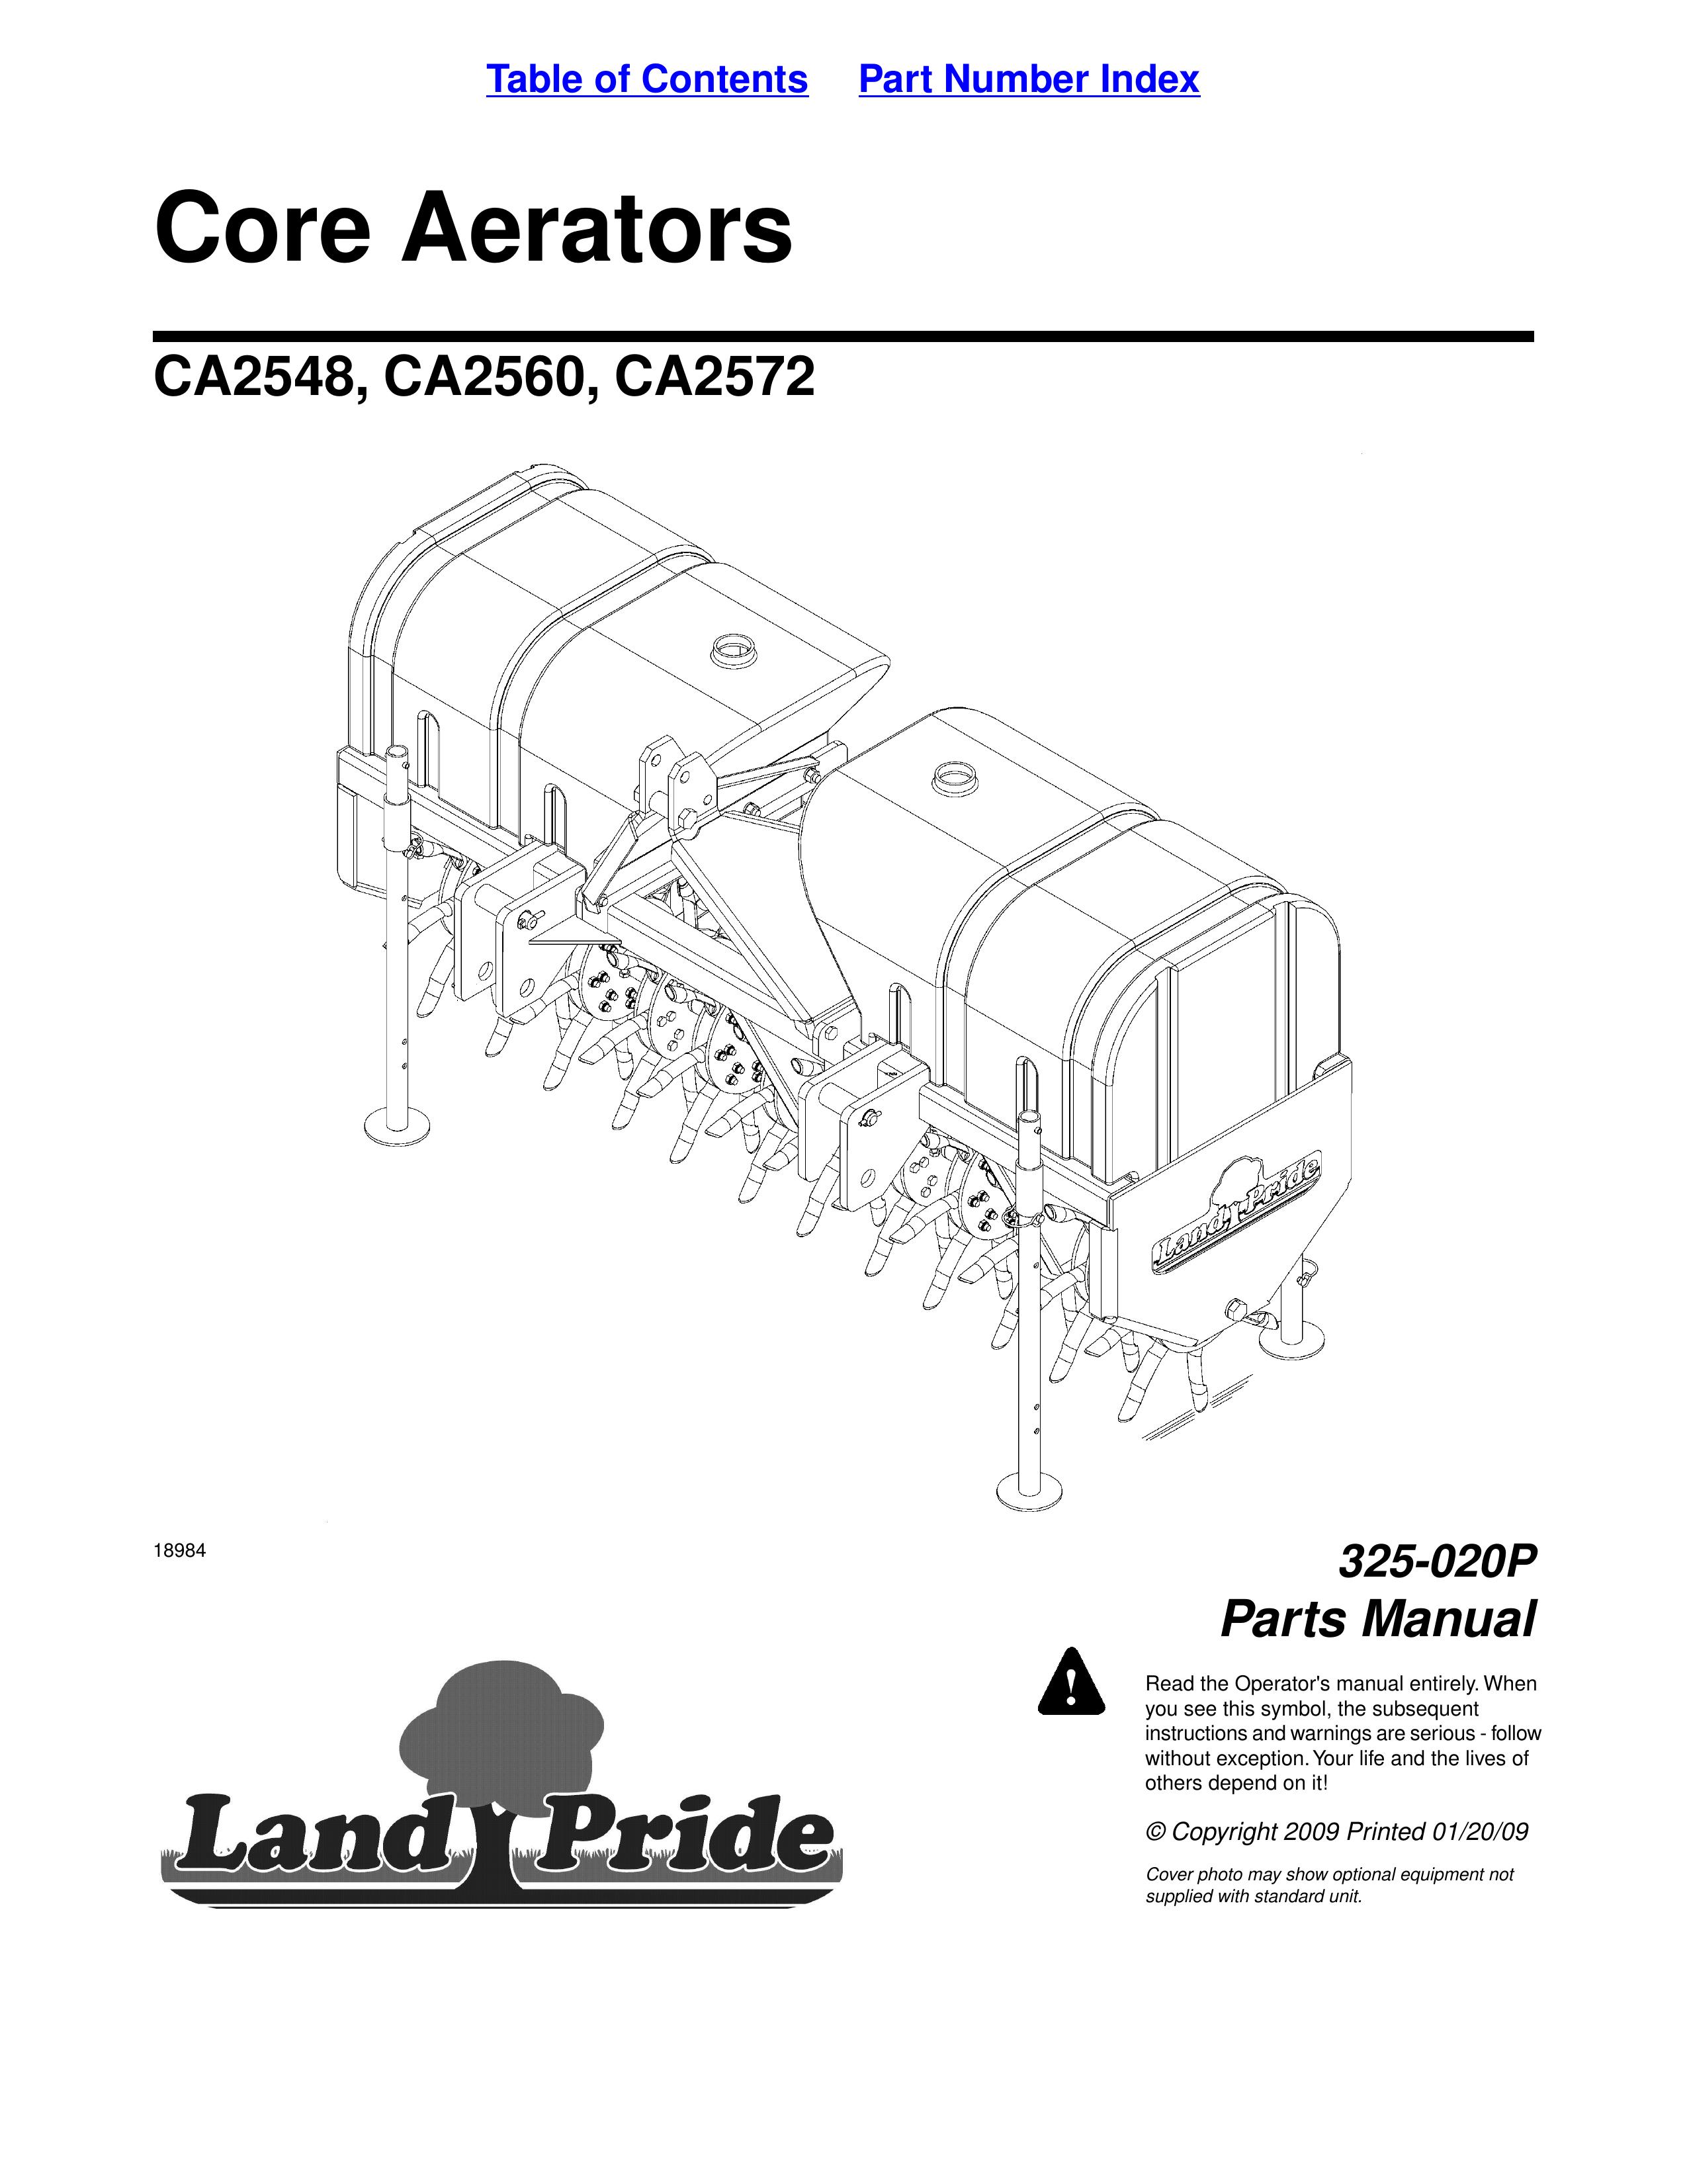 Land Pride CA2548 Lawn Aerator User Manual